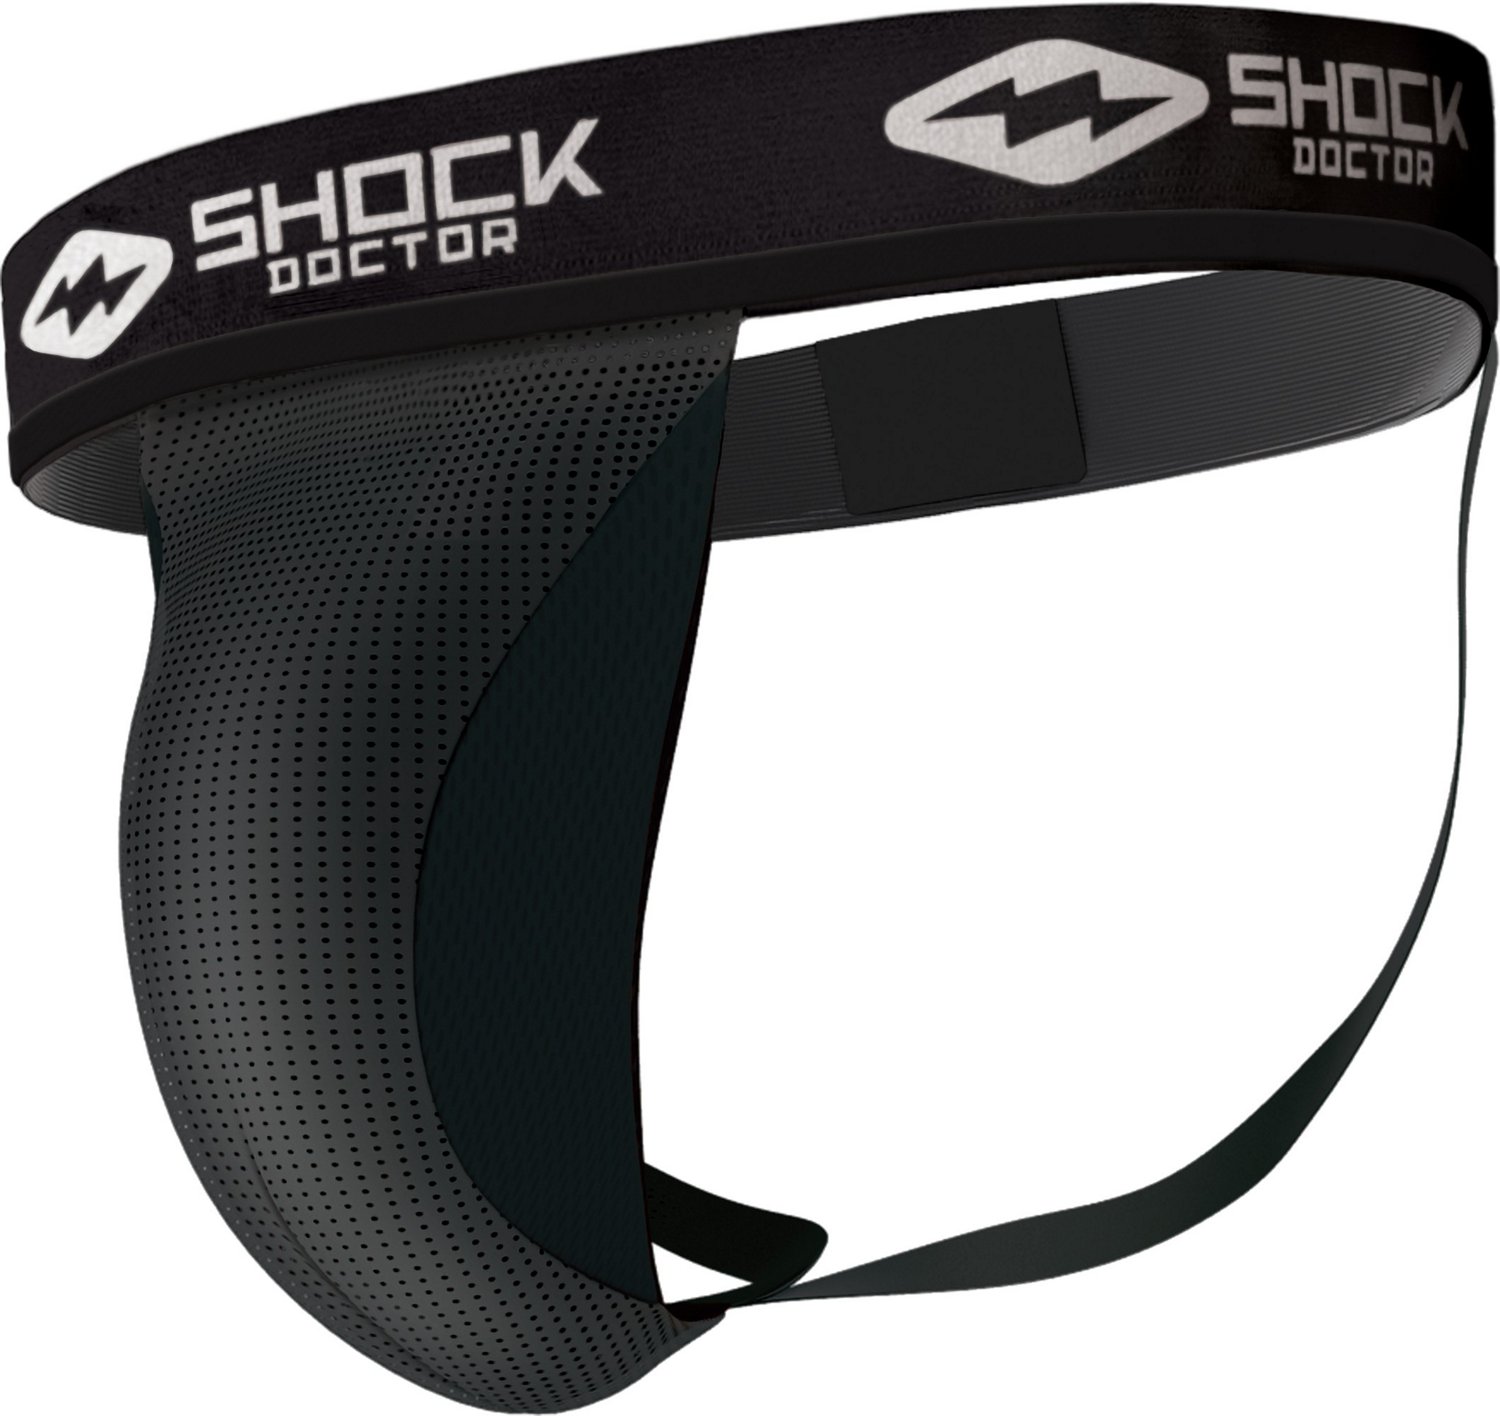 Shock Doctor Sport Compression Athletic Short with Pocket, Black